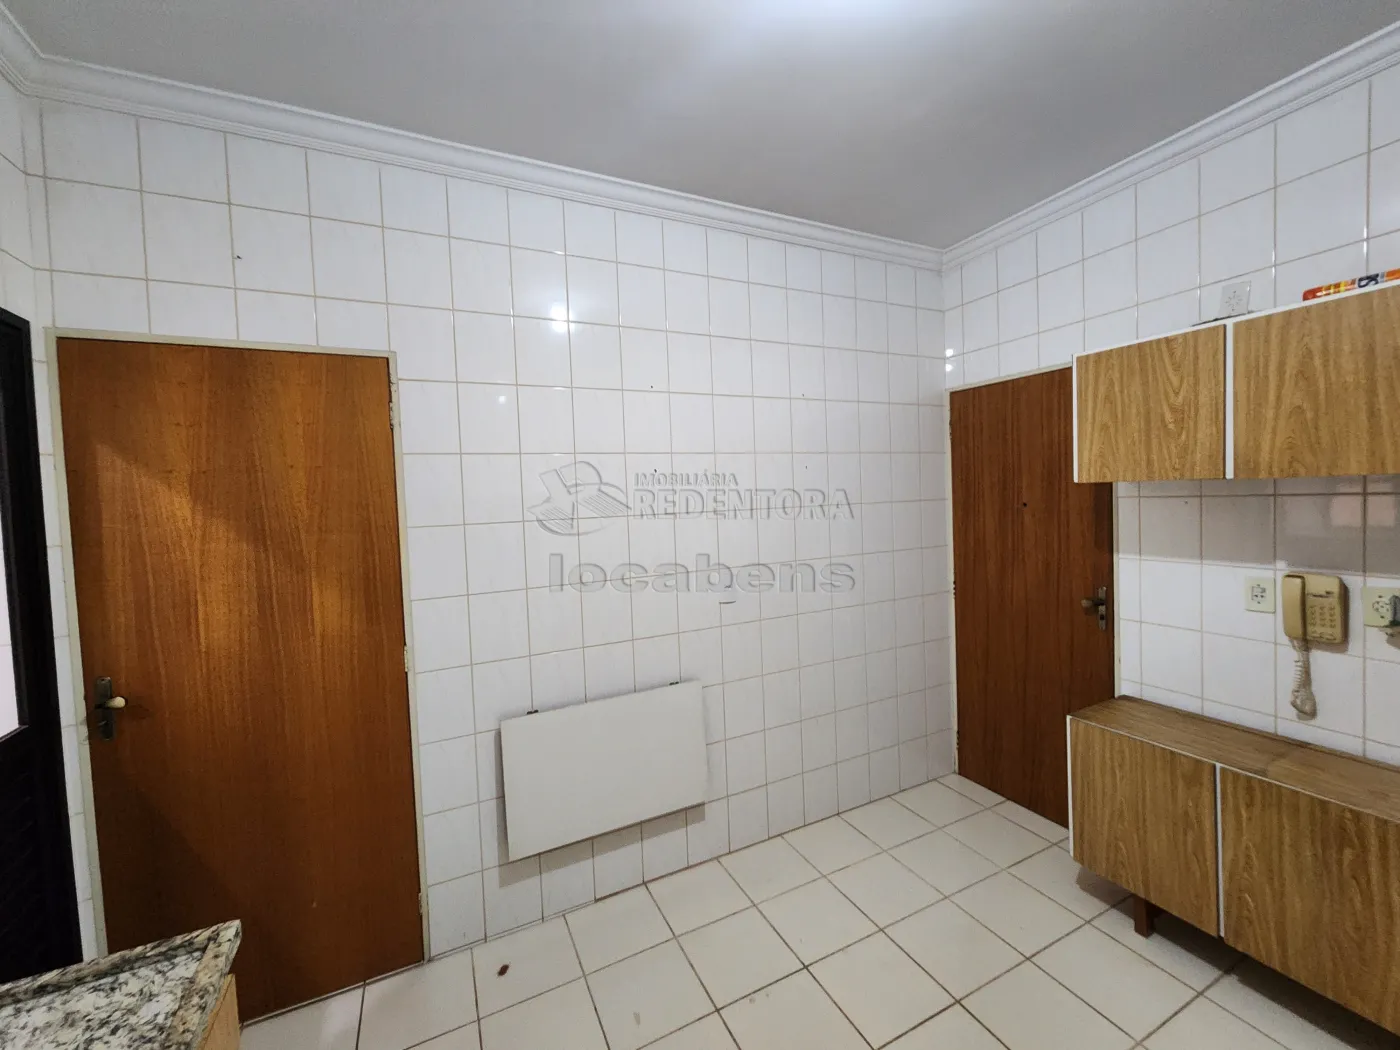 Alugar Apartamento / Padrão em São José do Rio Preto apenas R$ 900,00 - Foto 4